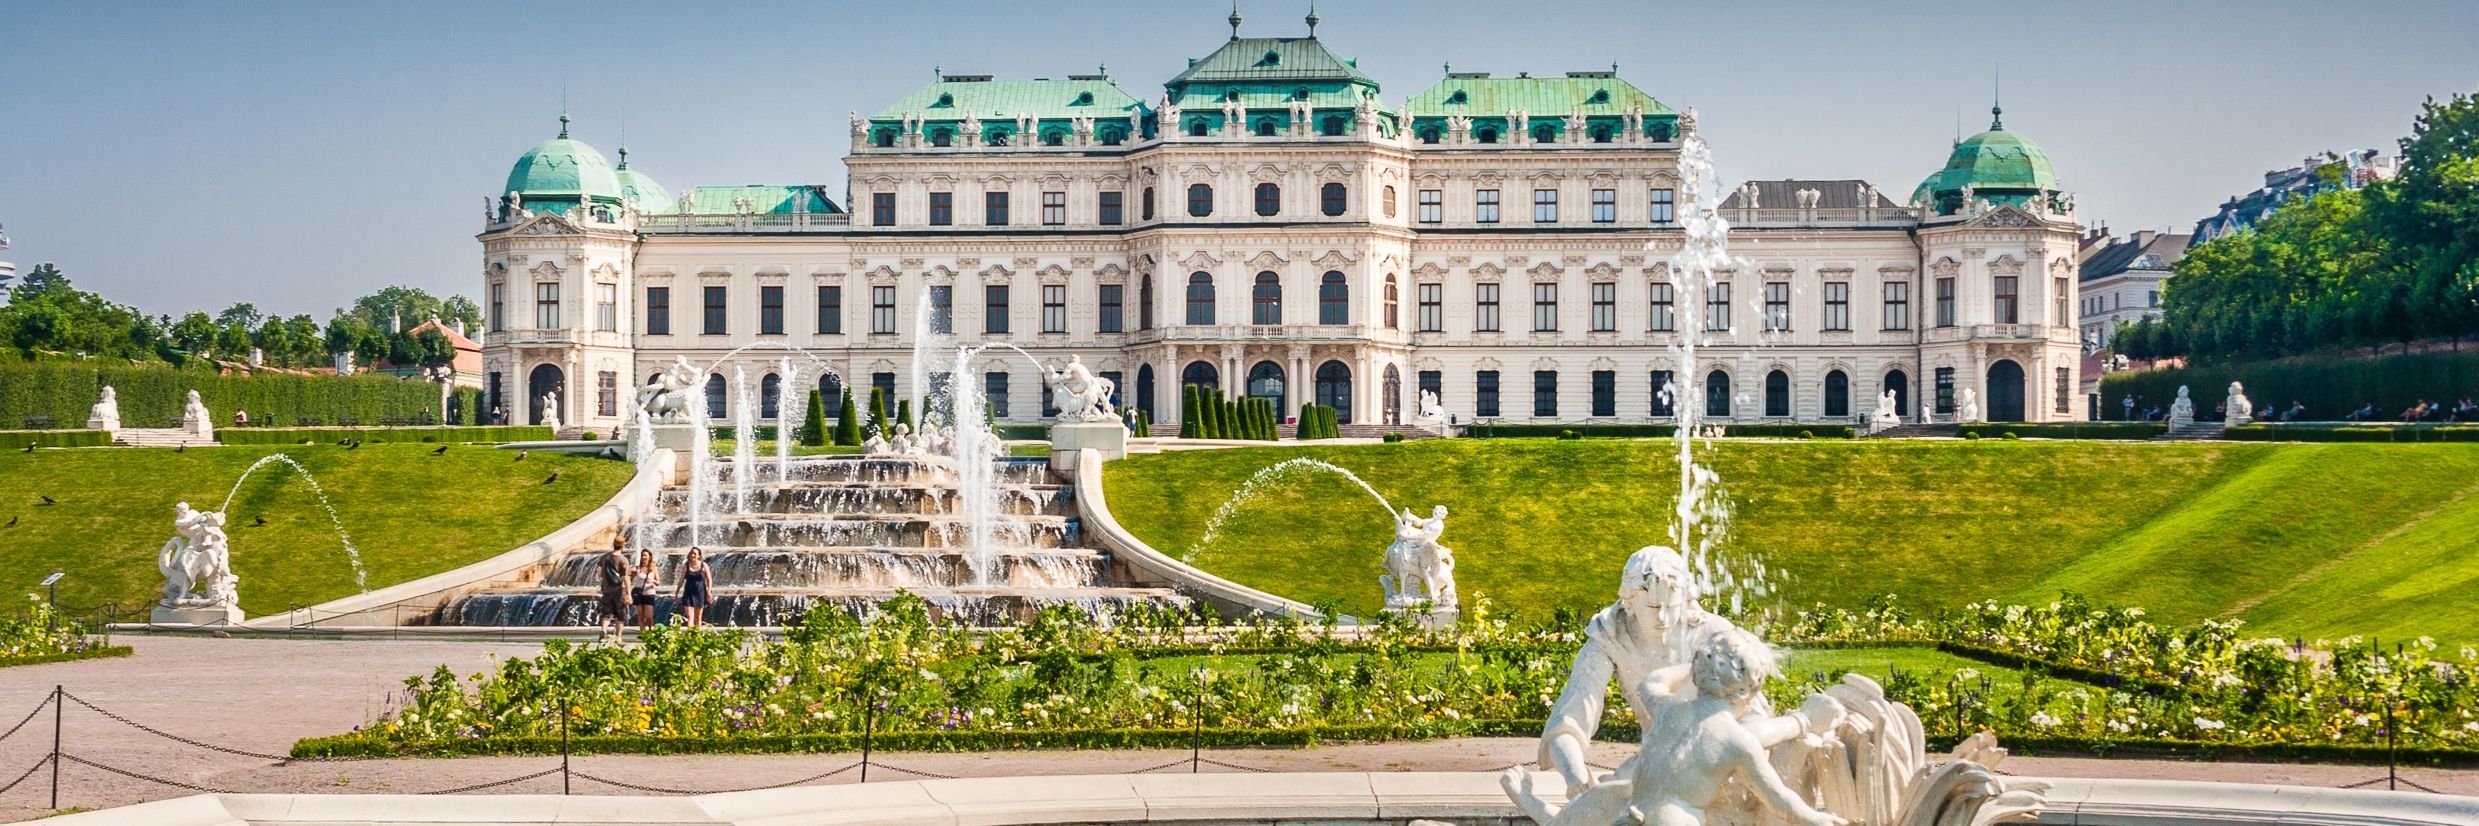 Cung điện Belvedere